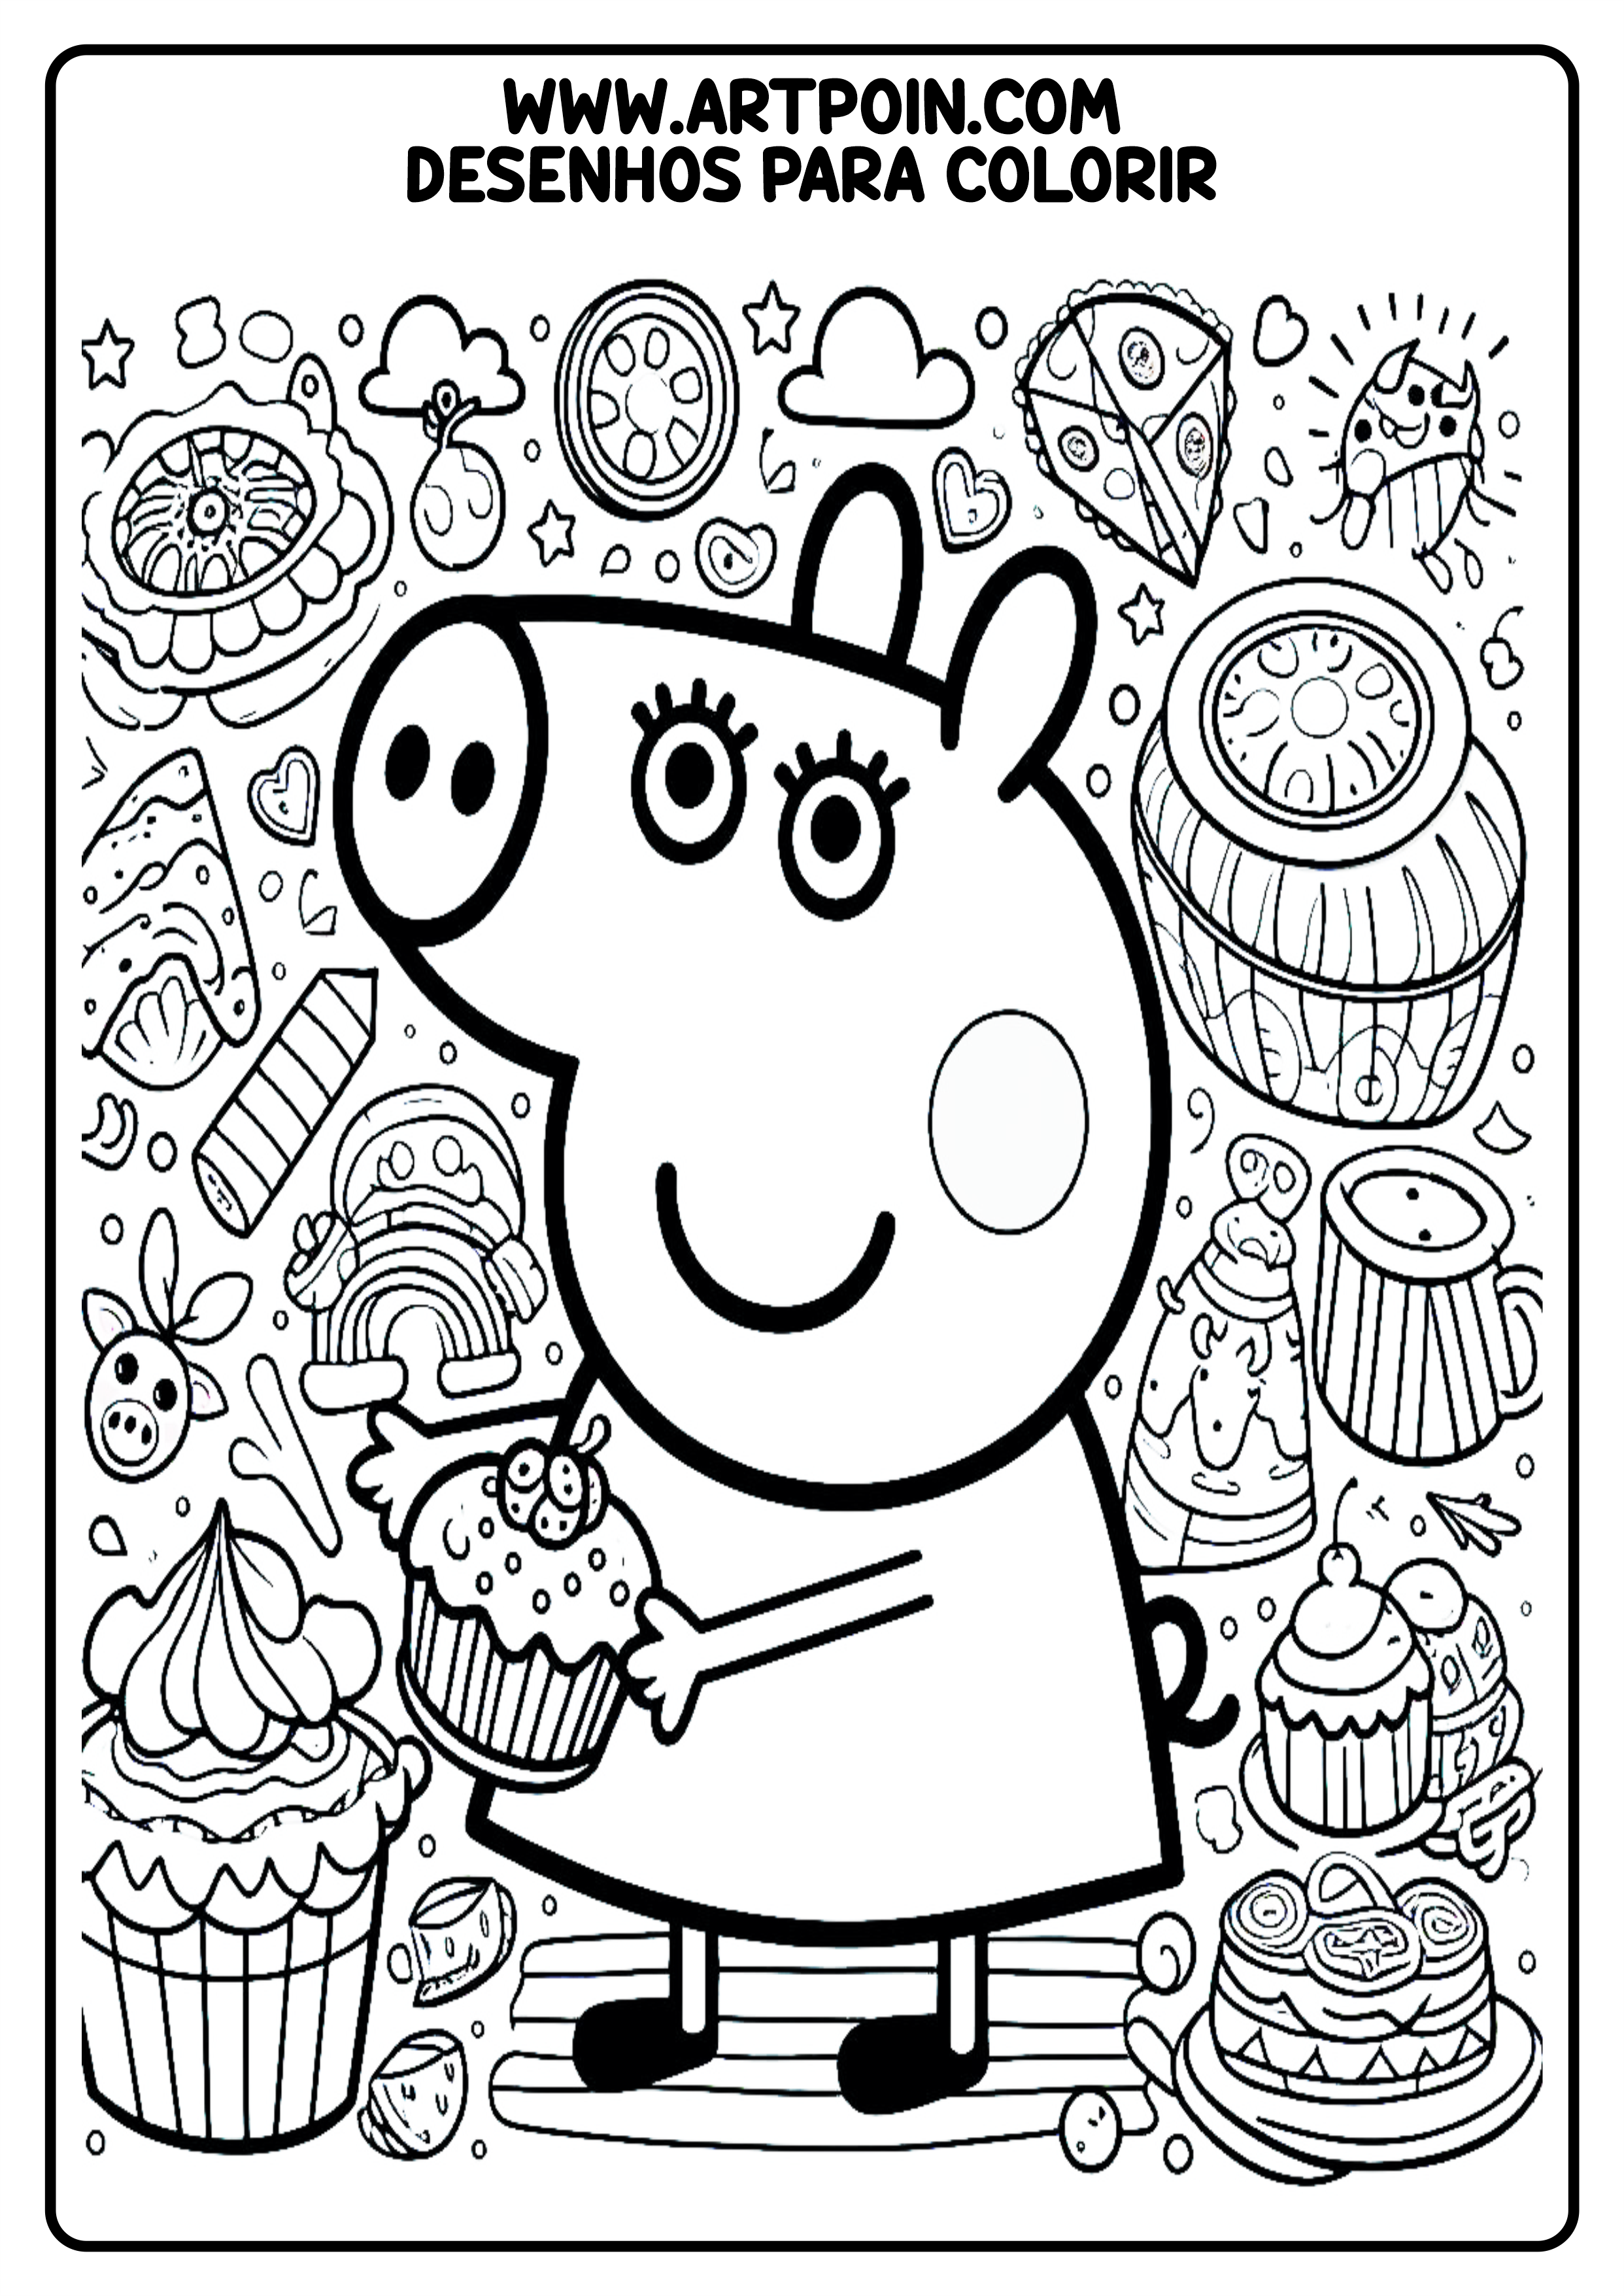 Peppa pig desenho para colorir para crianças kids coloring page png